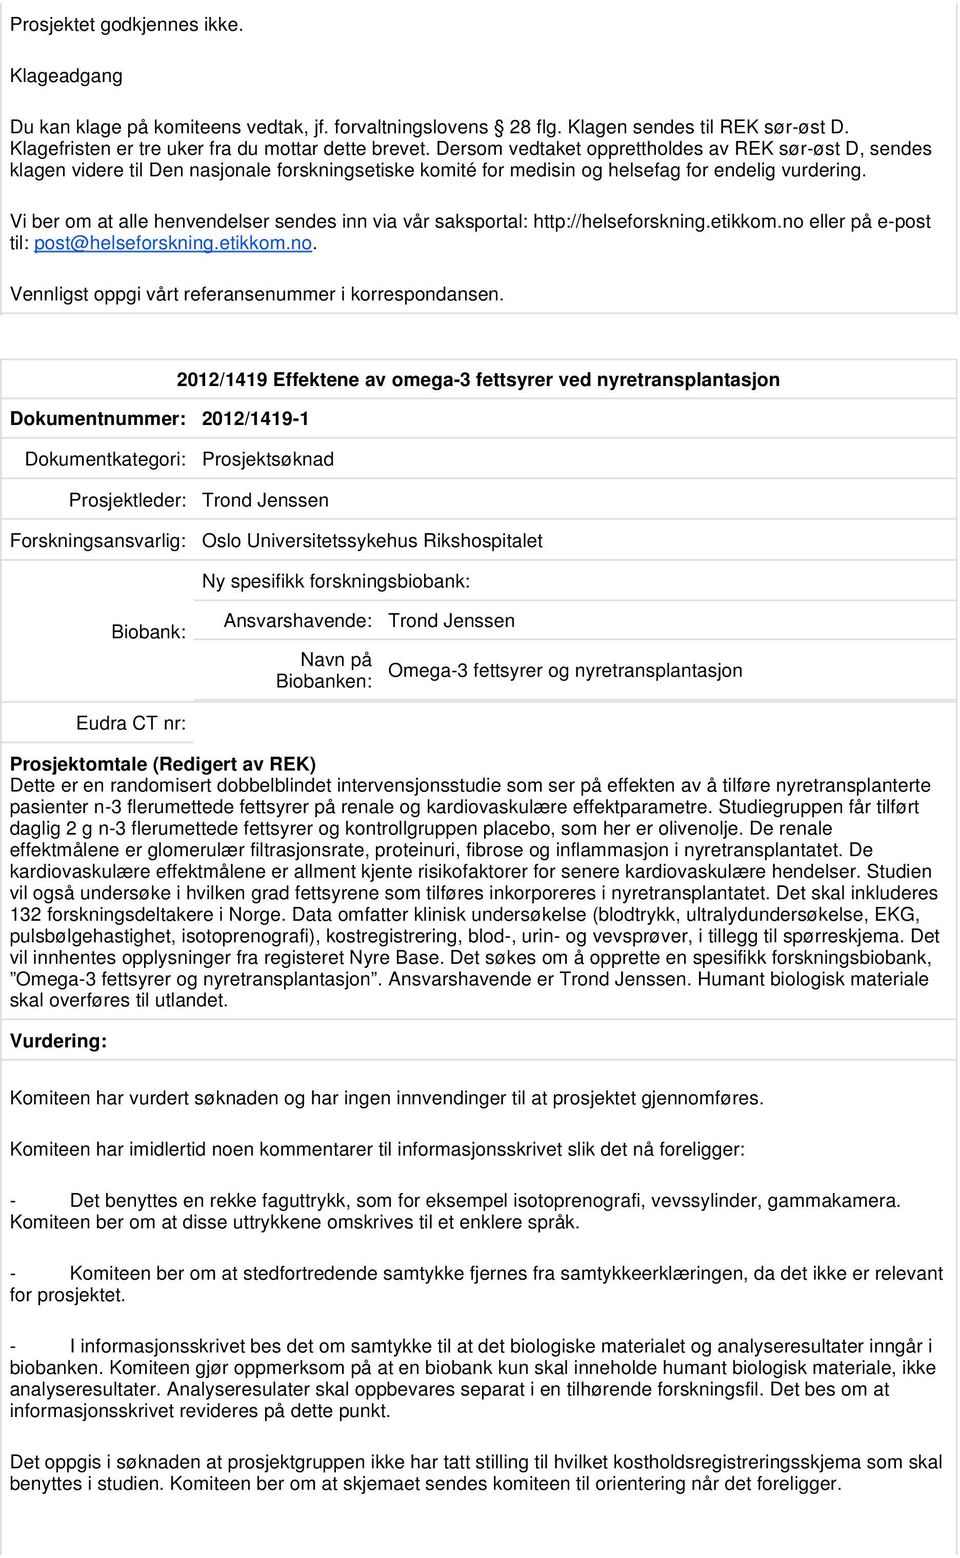 Dokumentnummer: 2012/1419-1 2012/1419 Effektene av omega-3 fettsyrer ved nyretransplantasjon Prosjektleder: Trond Jenssen Oslo Universitetssykehus Rikshospitalet Ny spesifikk forskningsbiobank: